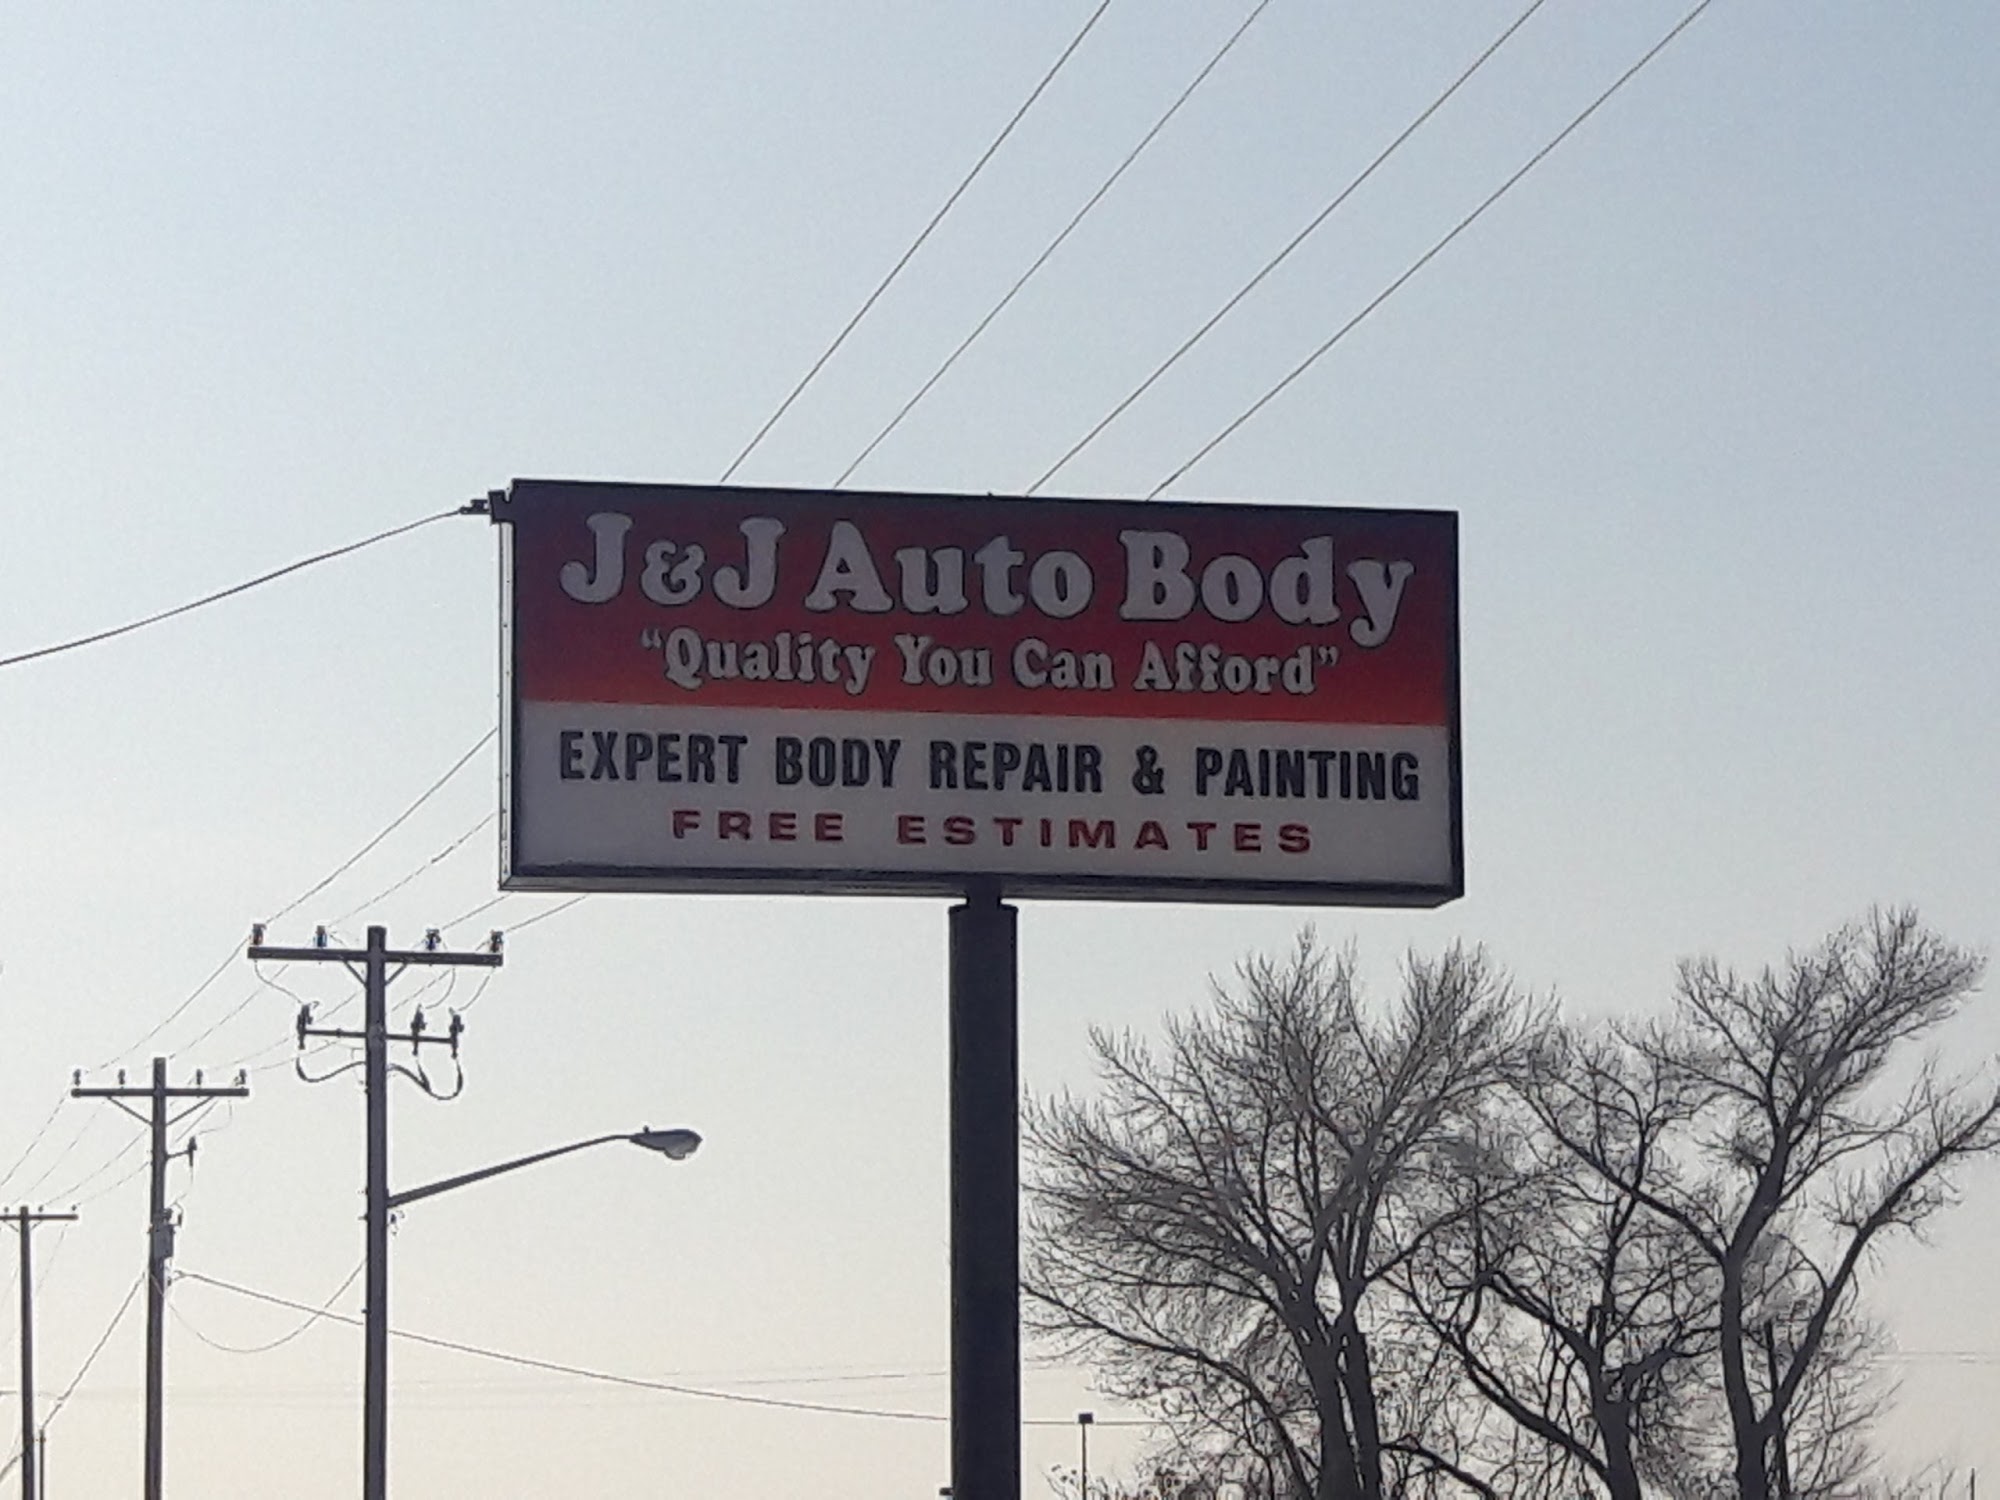 J & J Auto Body